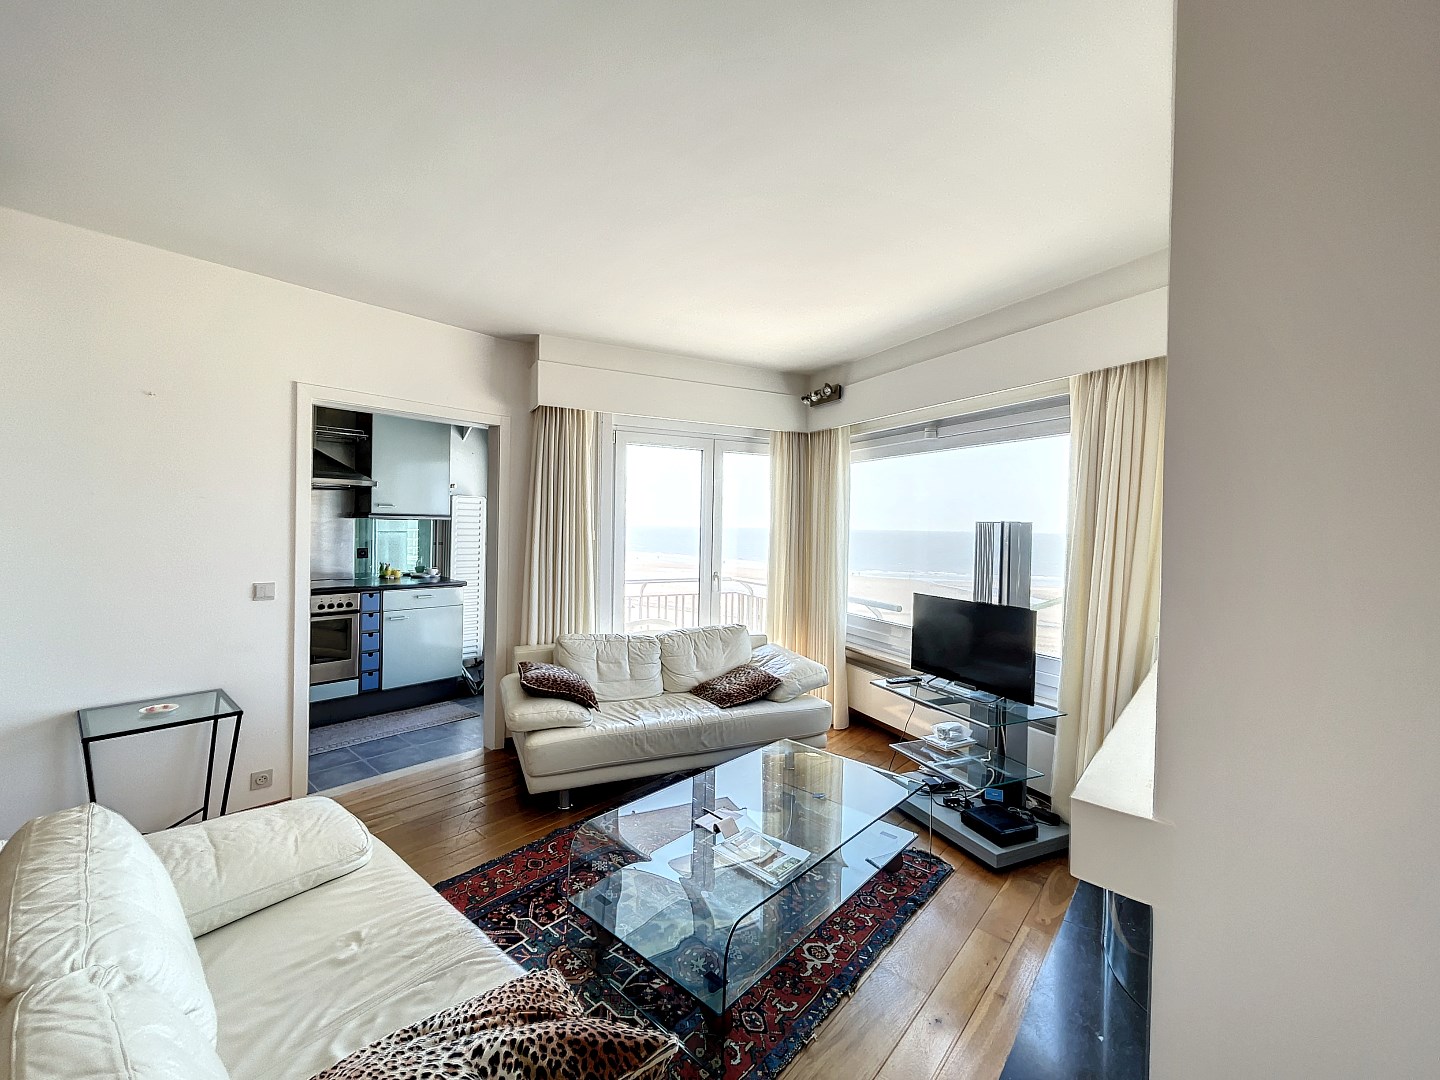 Appartement spacieux avec vue sur la mer, terrasse et garage. 